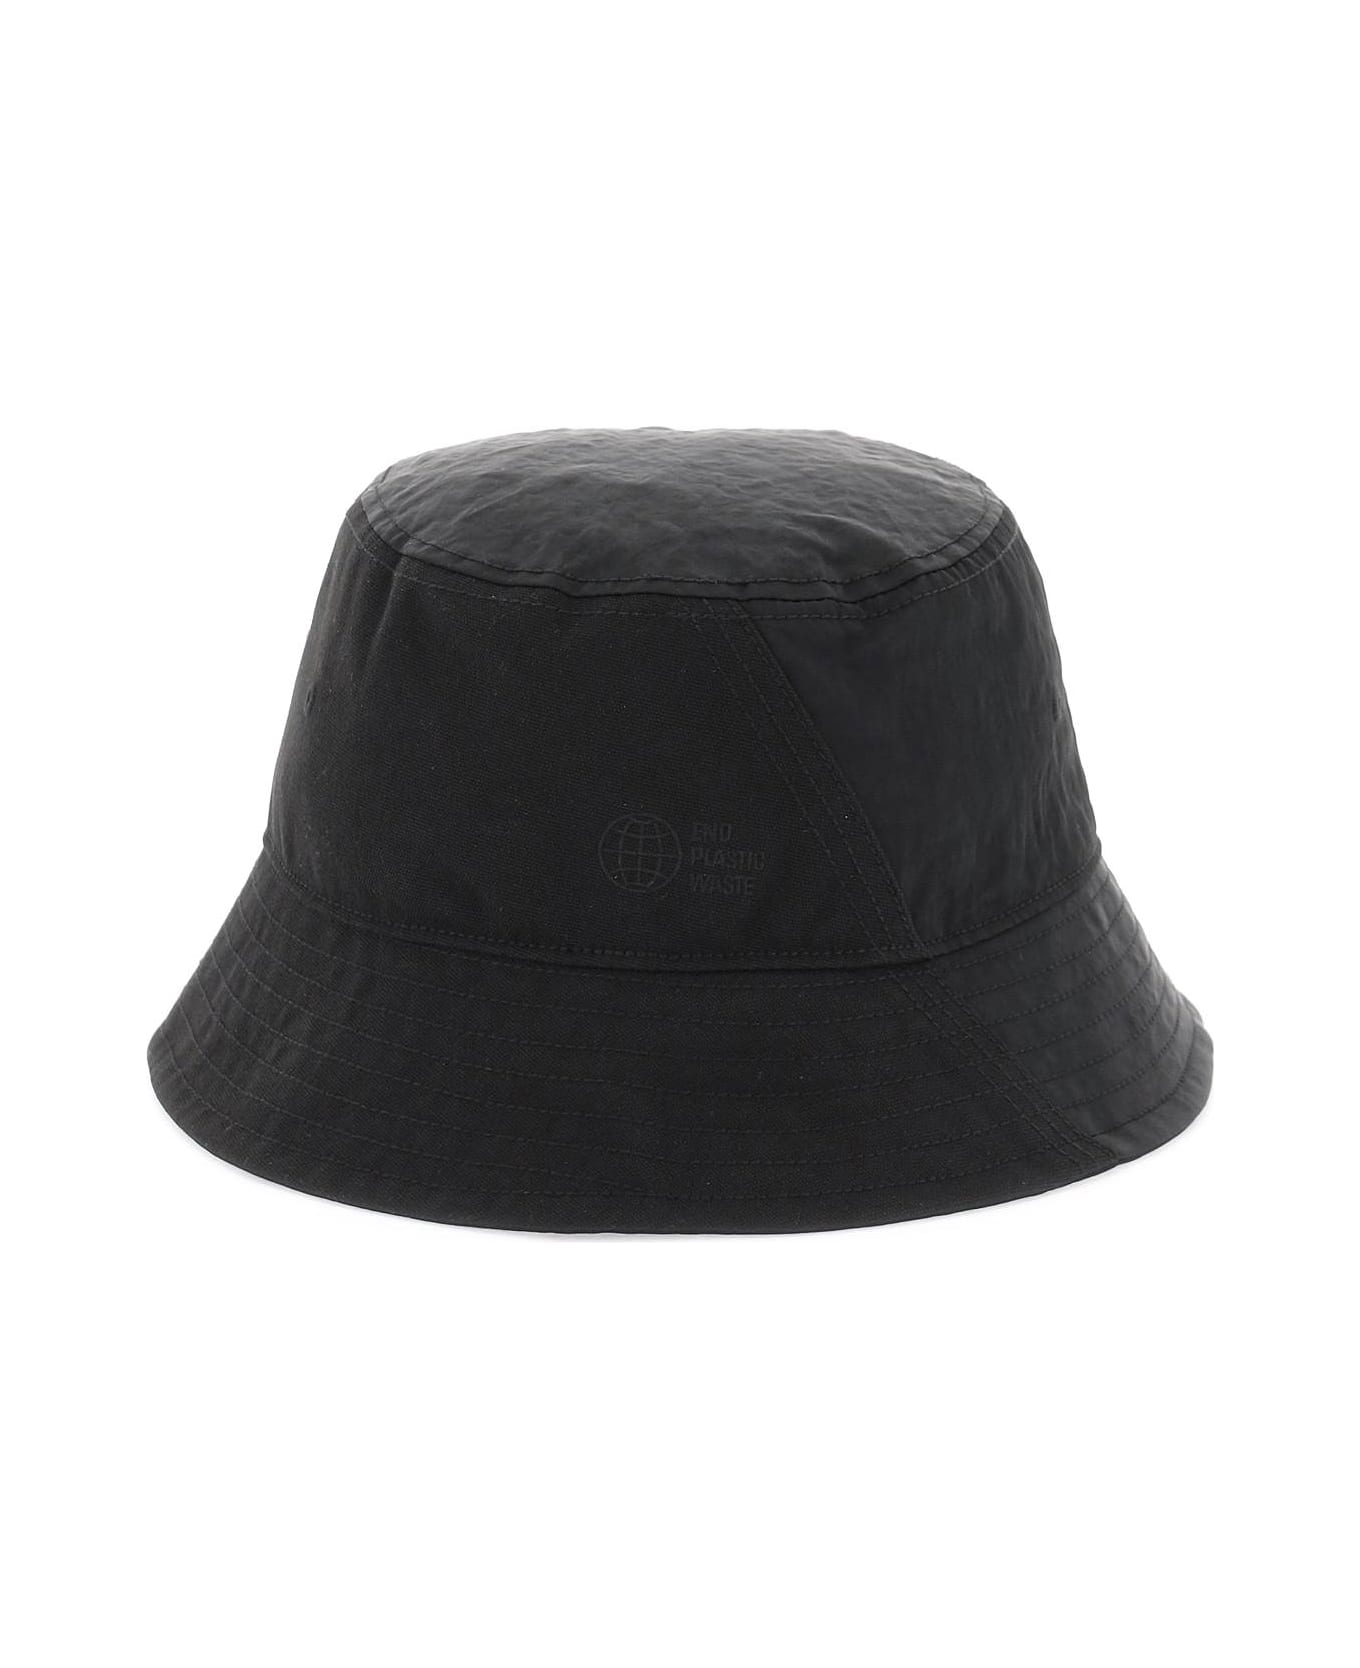 Y-3 Bucket Hat - black